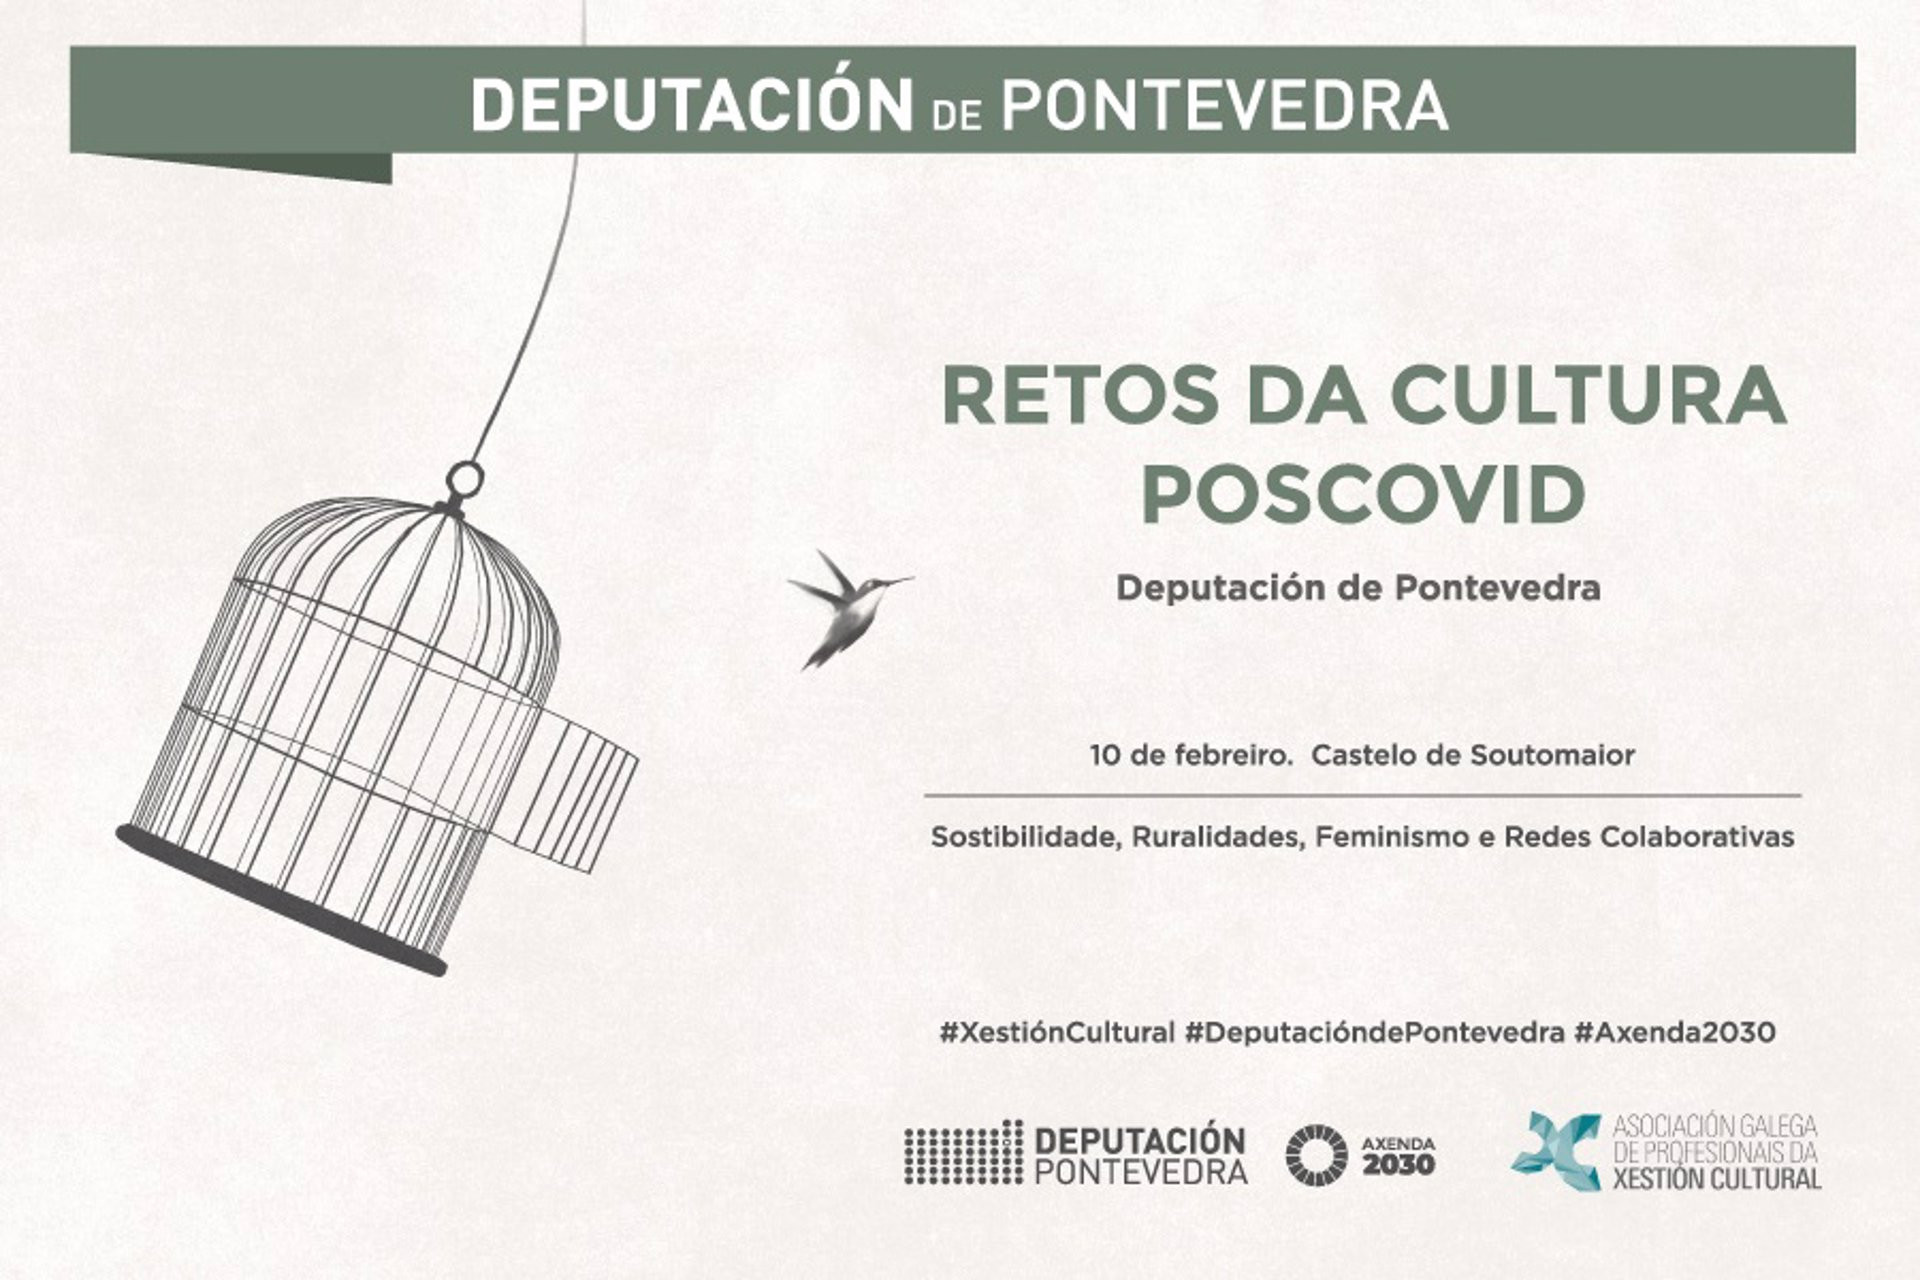 29-01-2022 Cartel de la jornada de debate organizada por la Diputación de Pontevedra
POLITICA 
DIPUTACIÓN DE PONTEVEDRA